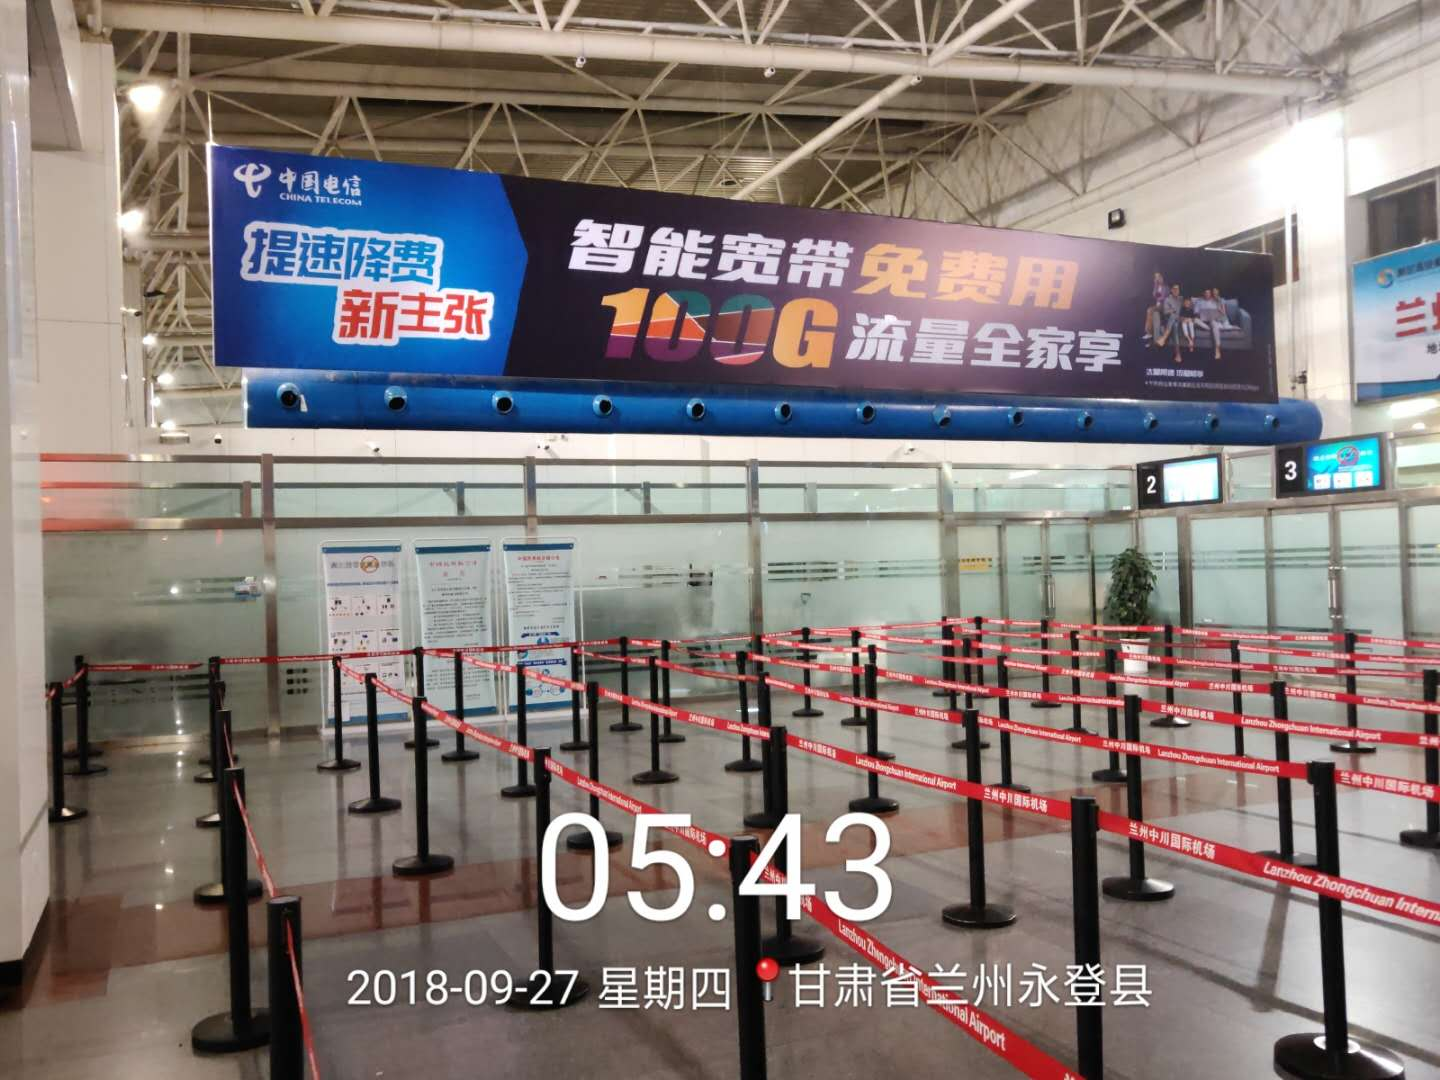 哪里有机场广告代理商_中川广告发布运营商-甘肃枫华文化投资发展有限公司